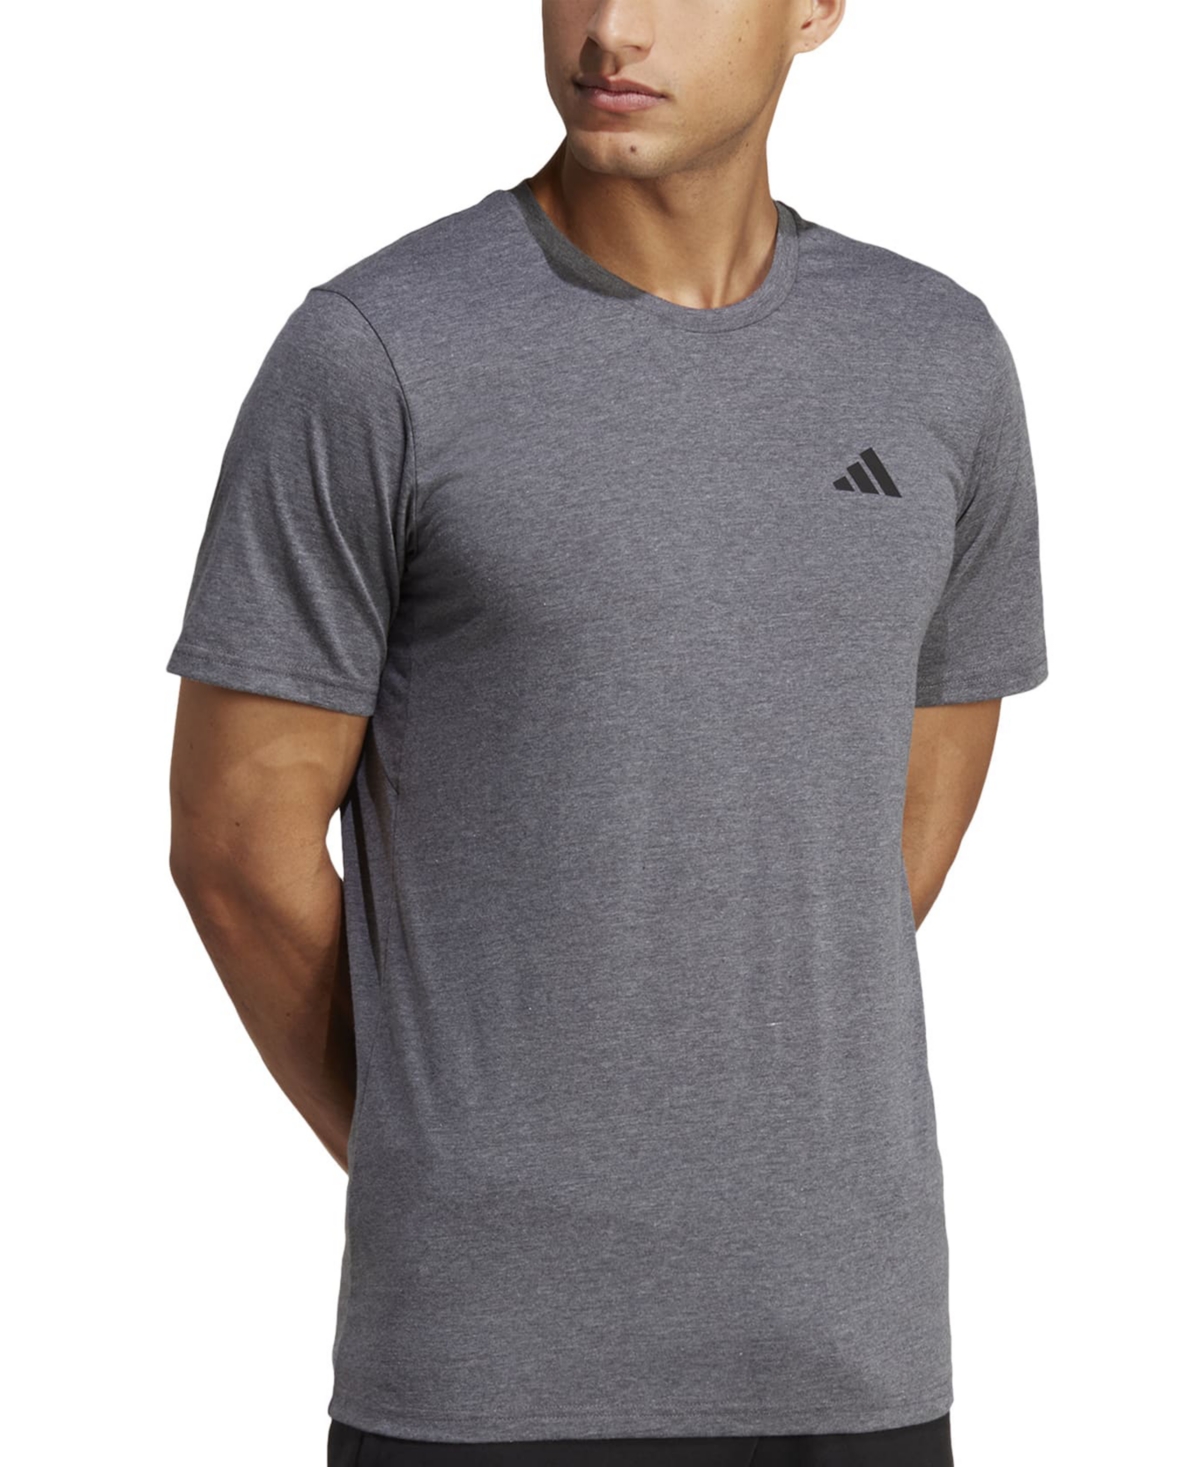 Adidas Originals Aeroready Training Essentials T-shirt In Dgreyh/white/black